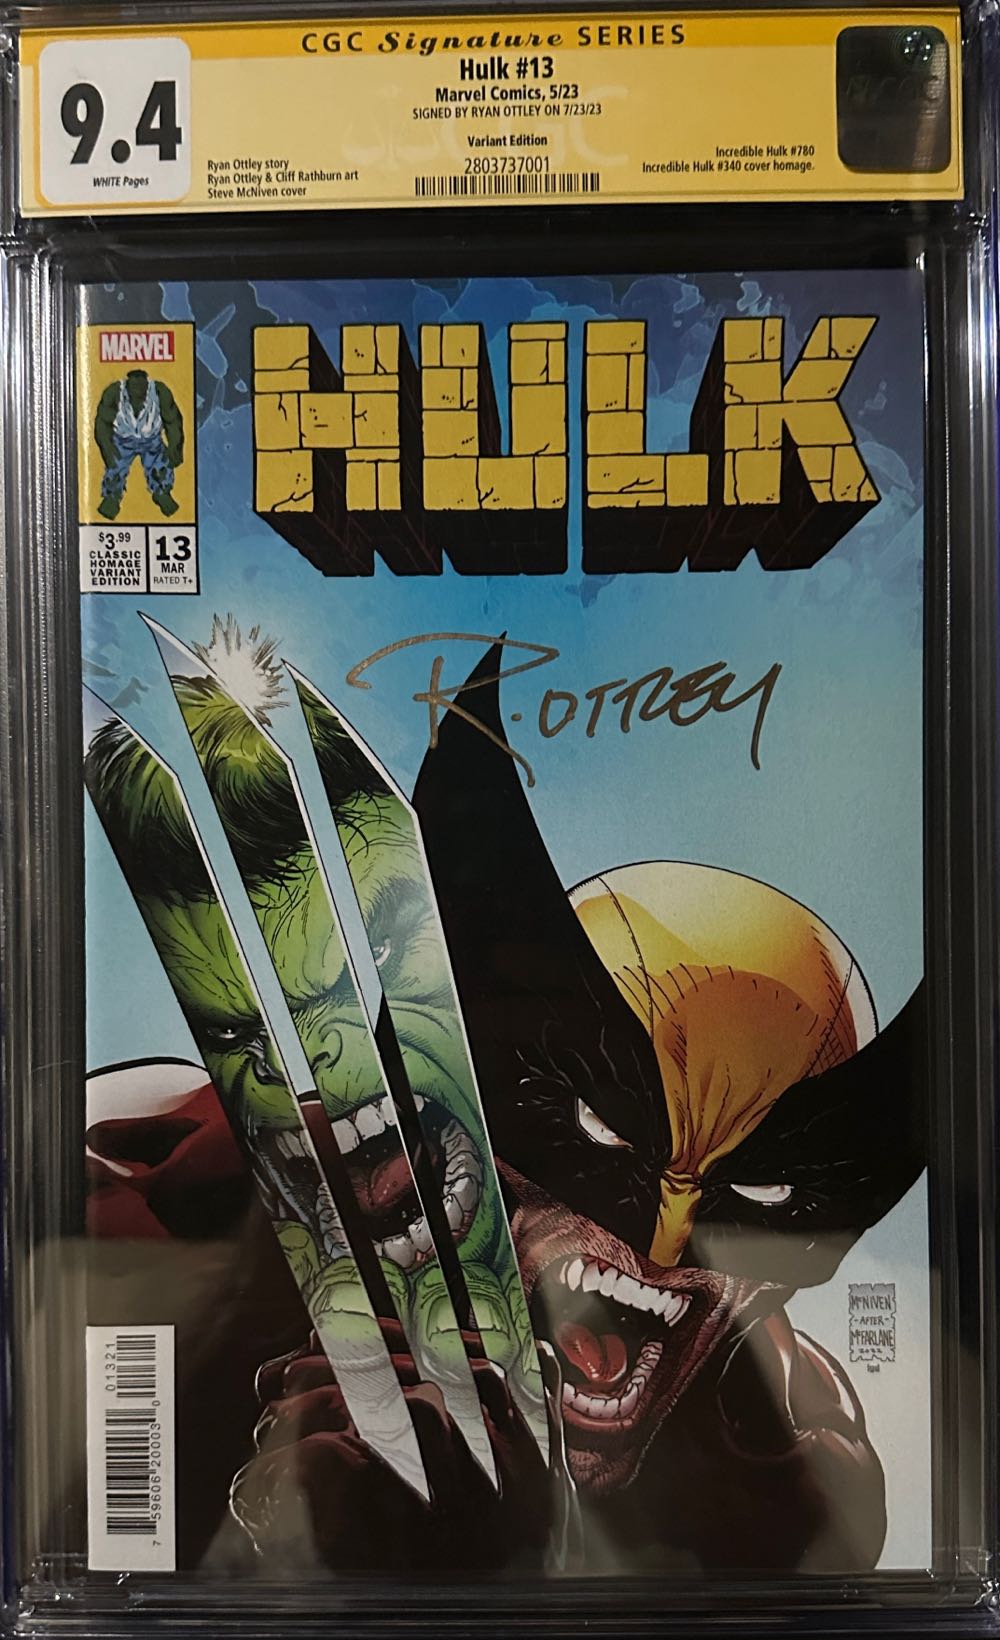 Hulk V5 - Marvel (13 - Mar 2023) comic book collectible [Barcode 75960620003001321] - Main Image 3